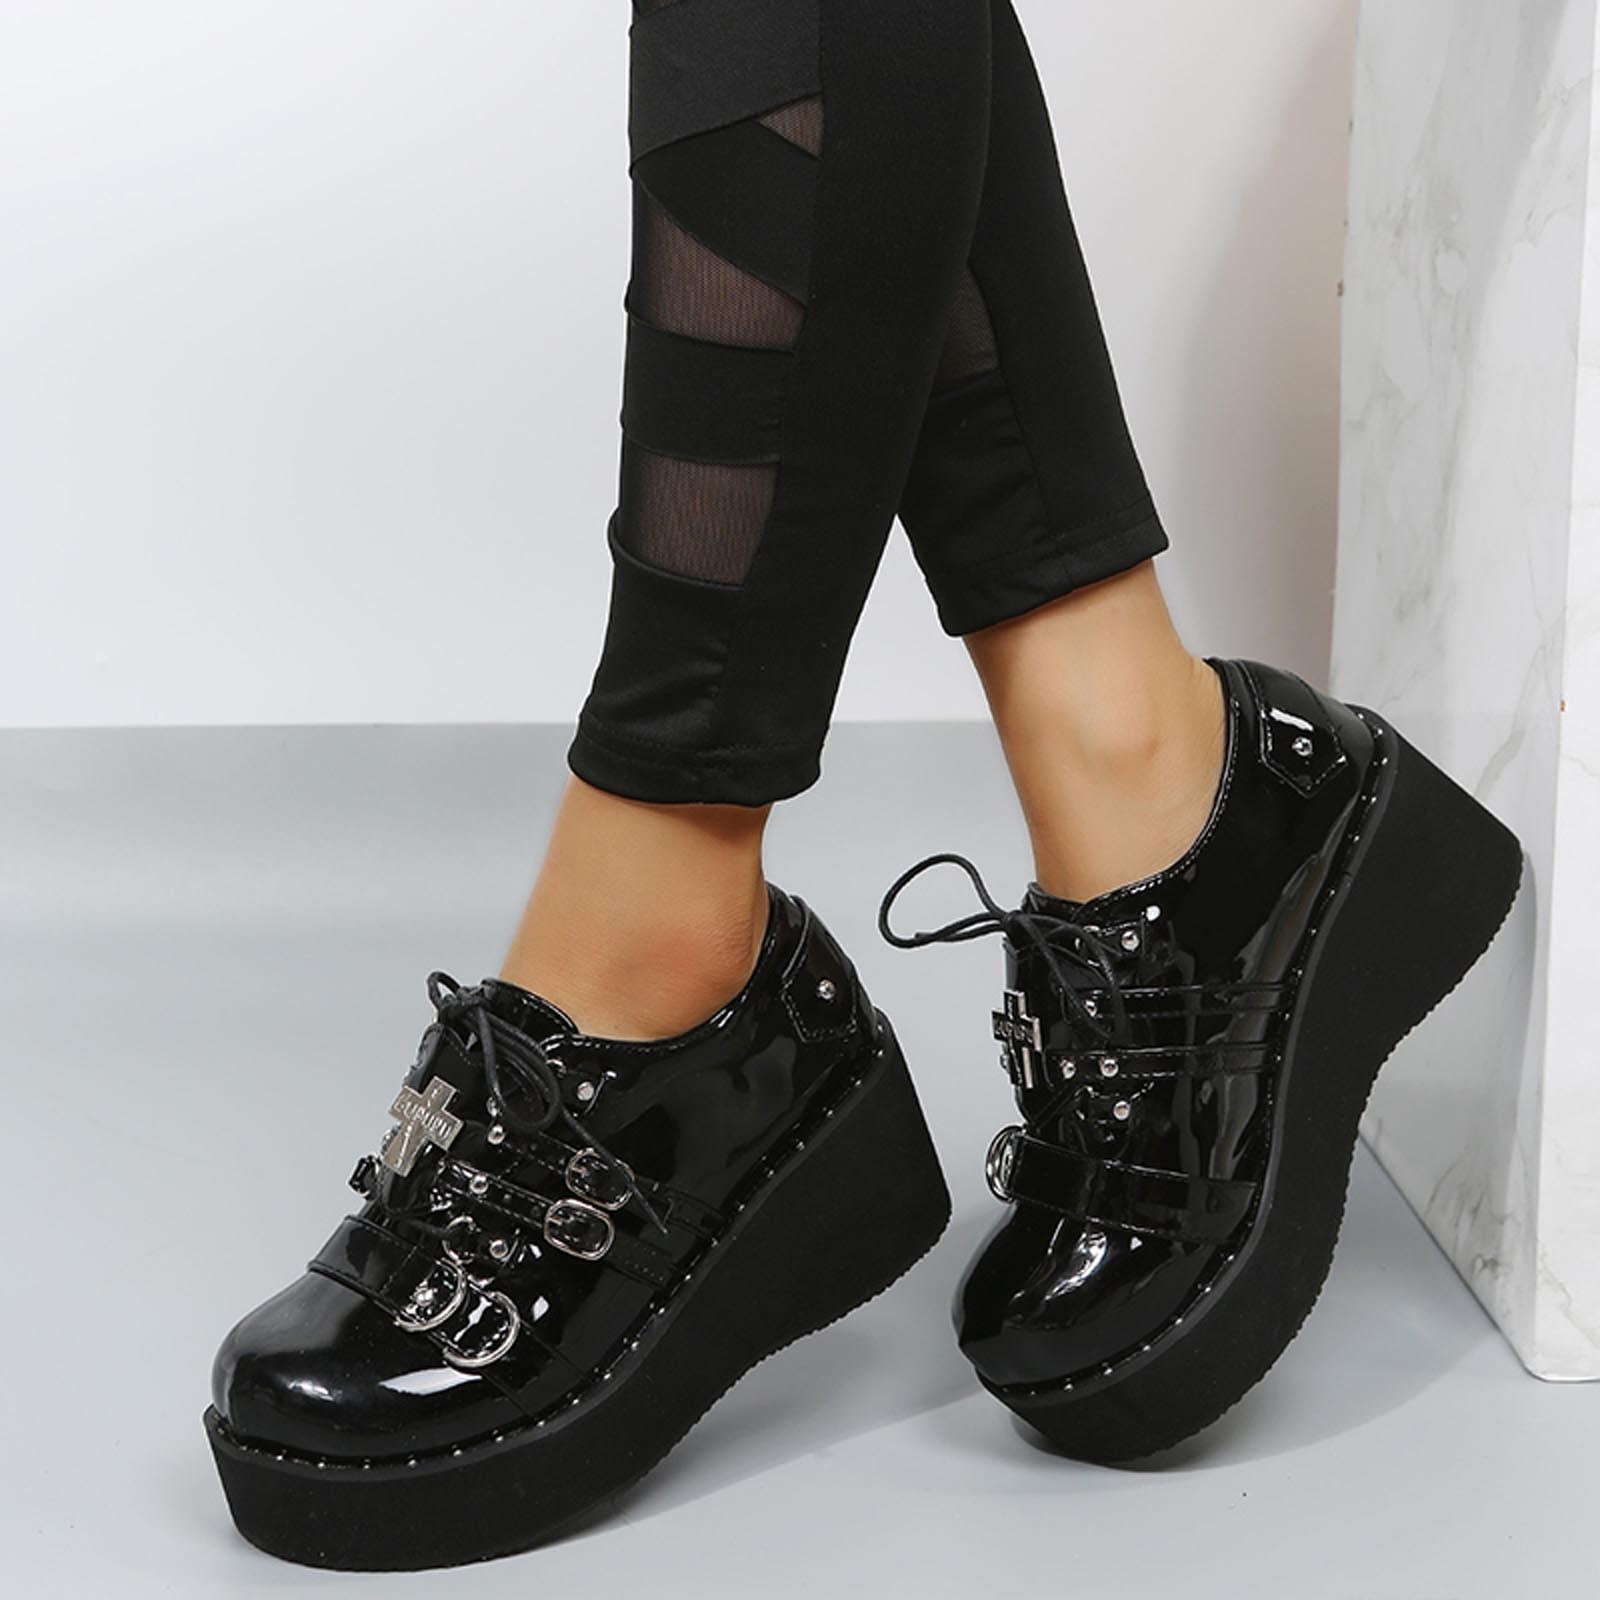 Women Boots High Heels Platform Plus Size Girls Shoes - Walmart.com